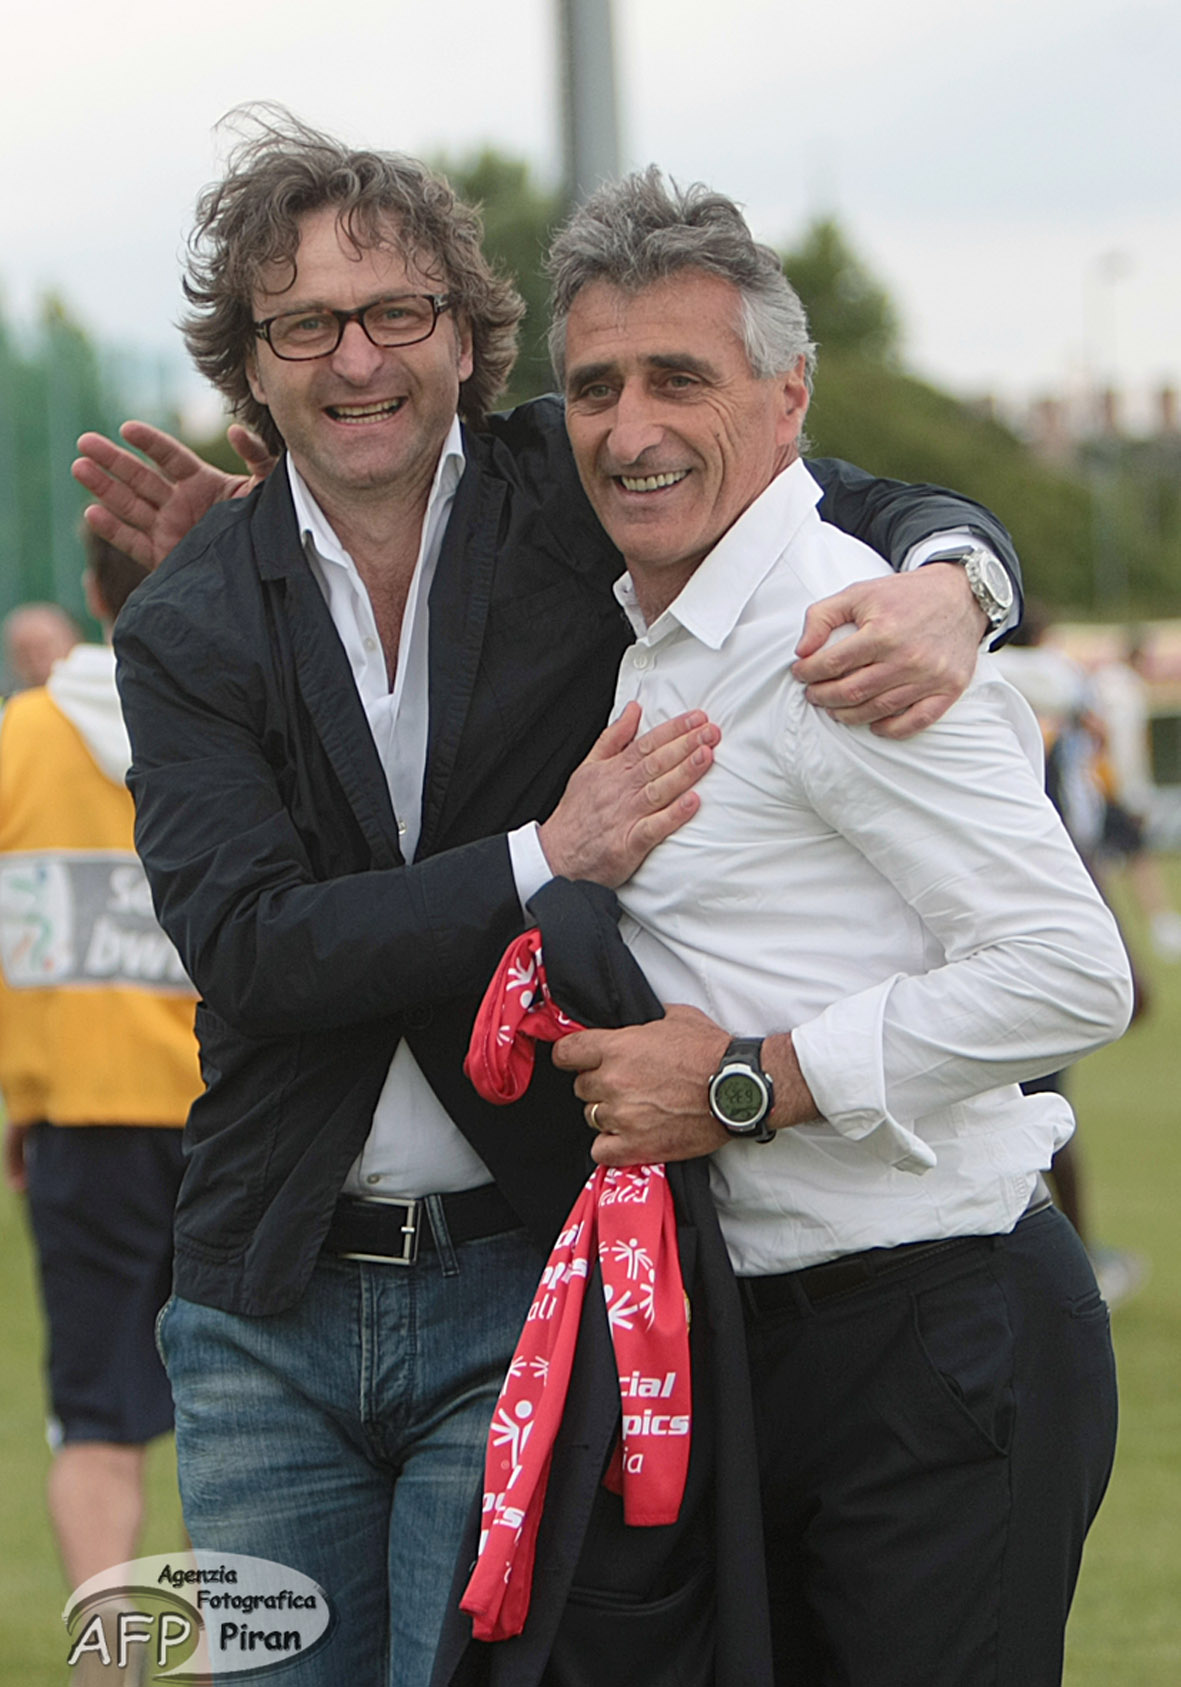 Claudio Foscarini abbracciato dal Direttore Generale Stafano Marchetti. Prosegue ancora una volta insieme la loro strada.